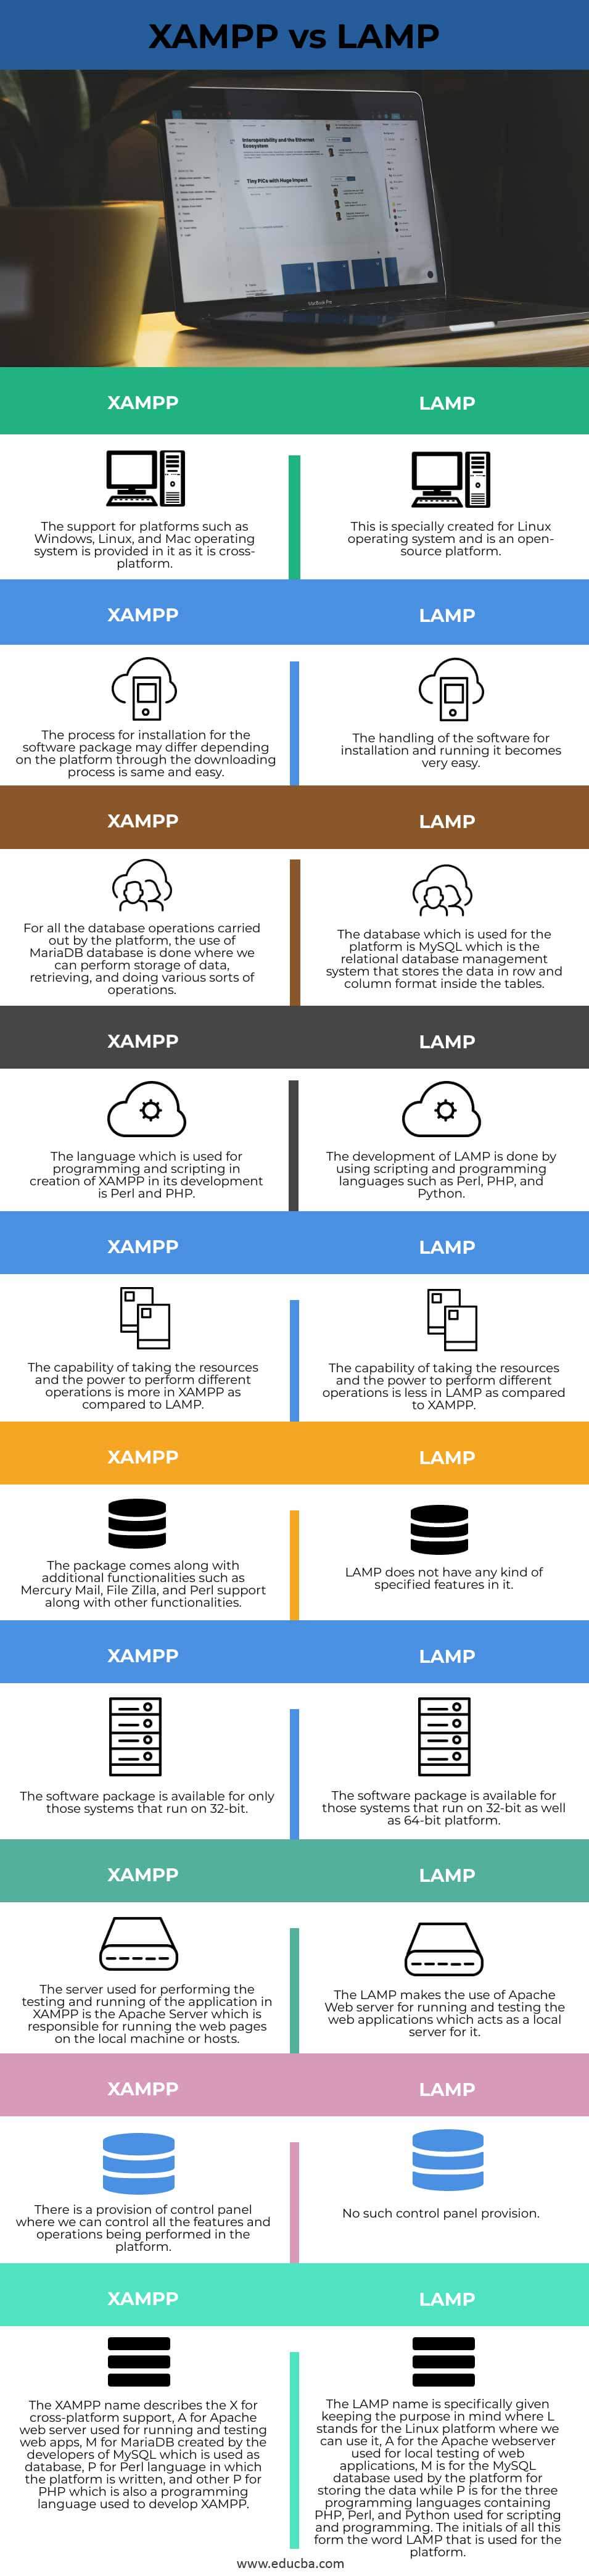 XAMPP-vs-LAMP-info